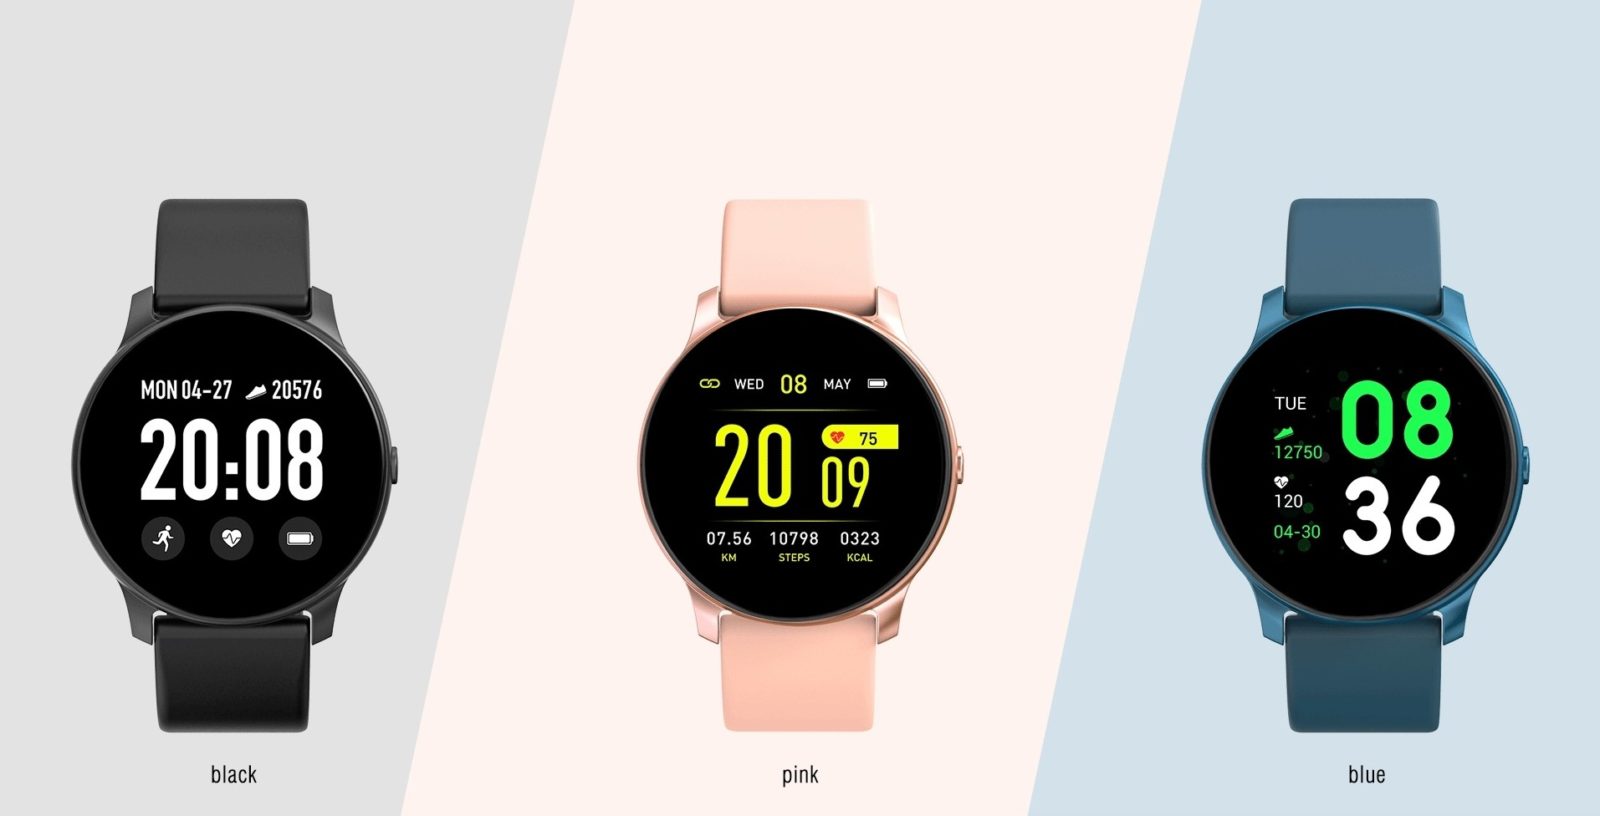 Kospet Magic, lo smartwatch che misura battiti, pressione e ossigeno nel sangue a soli 13,57 euro